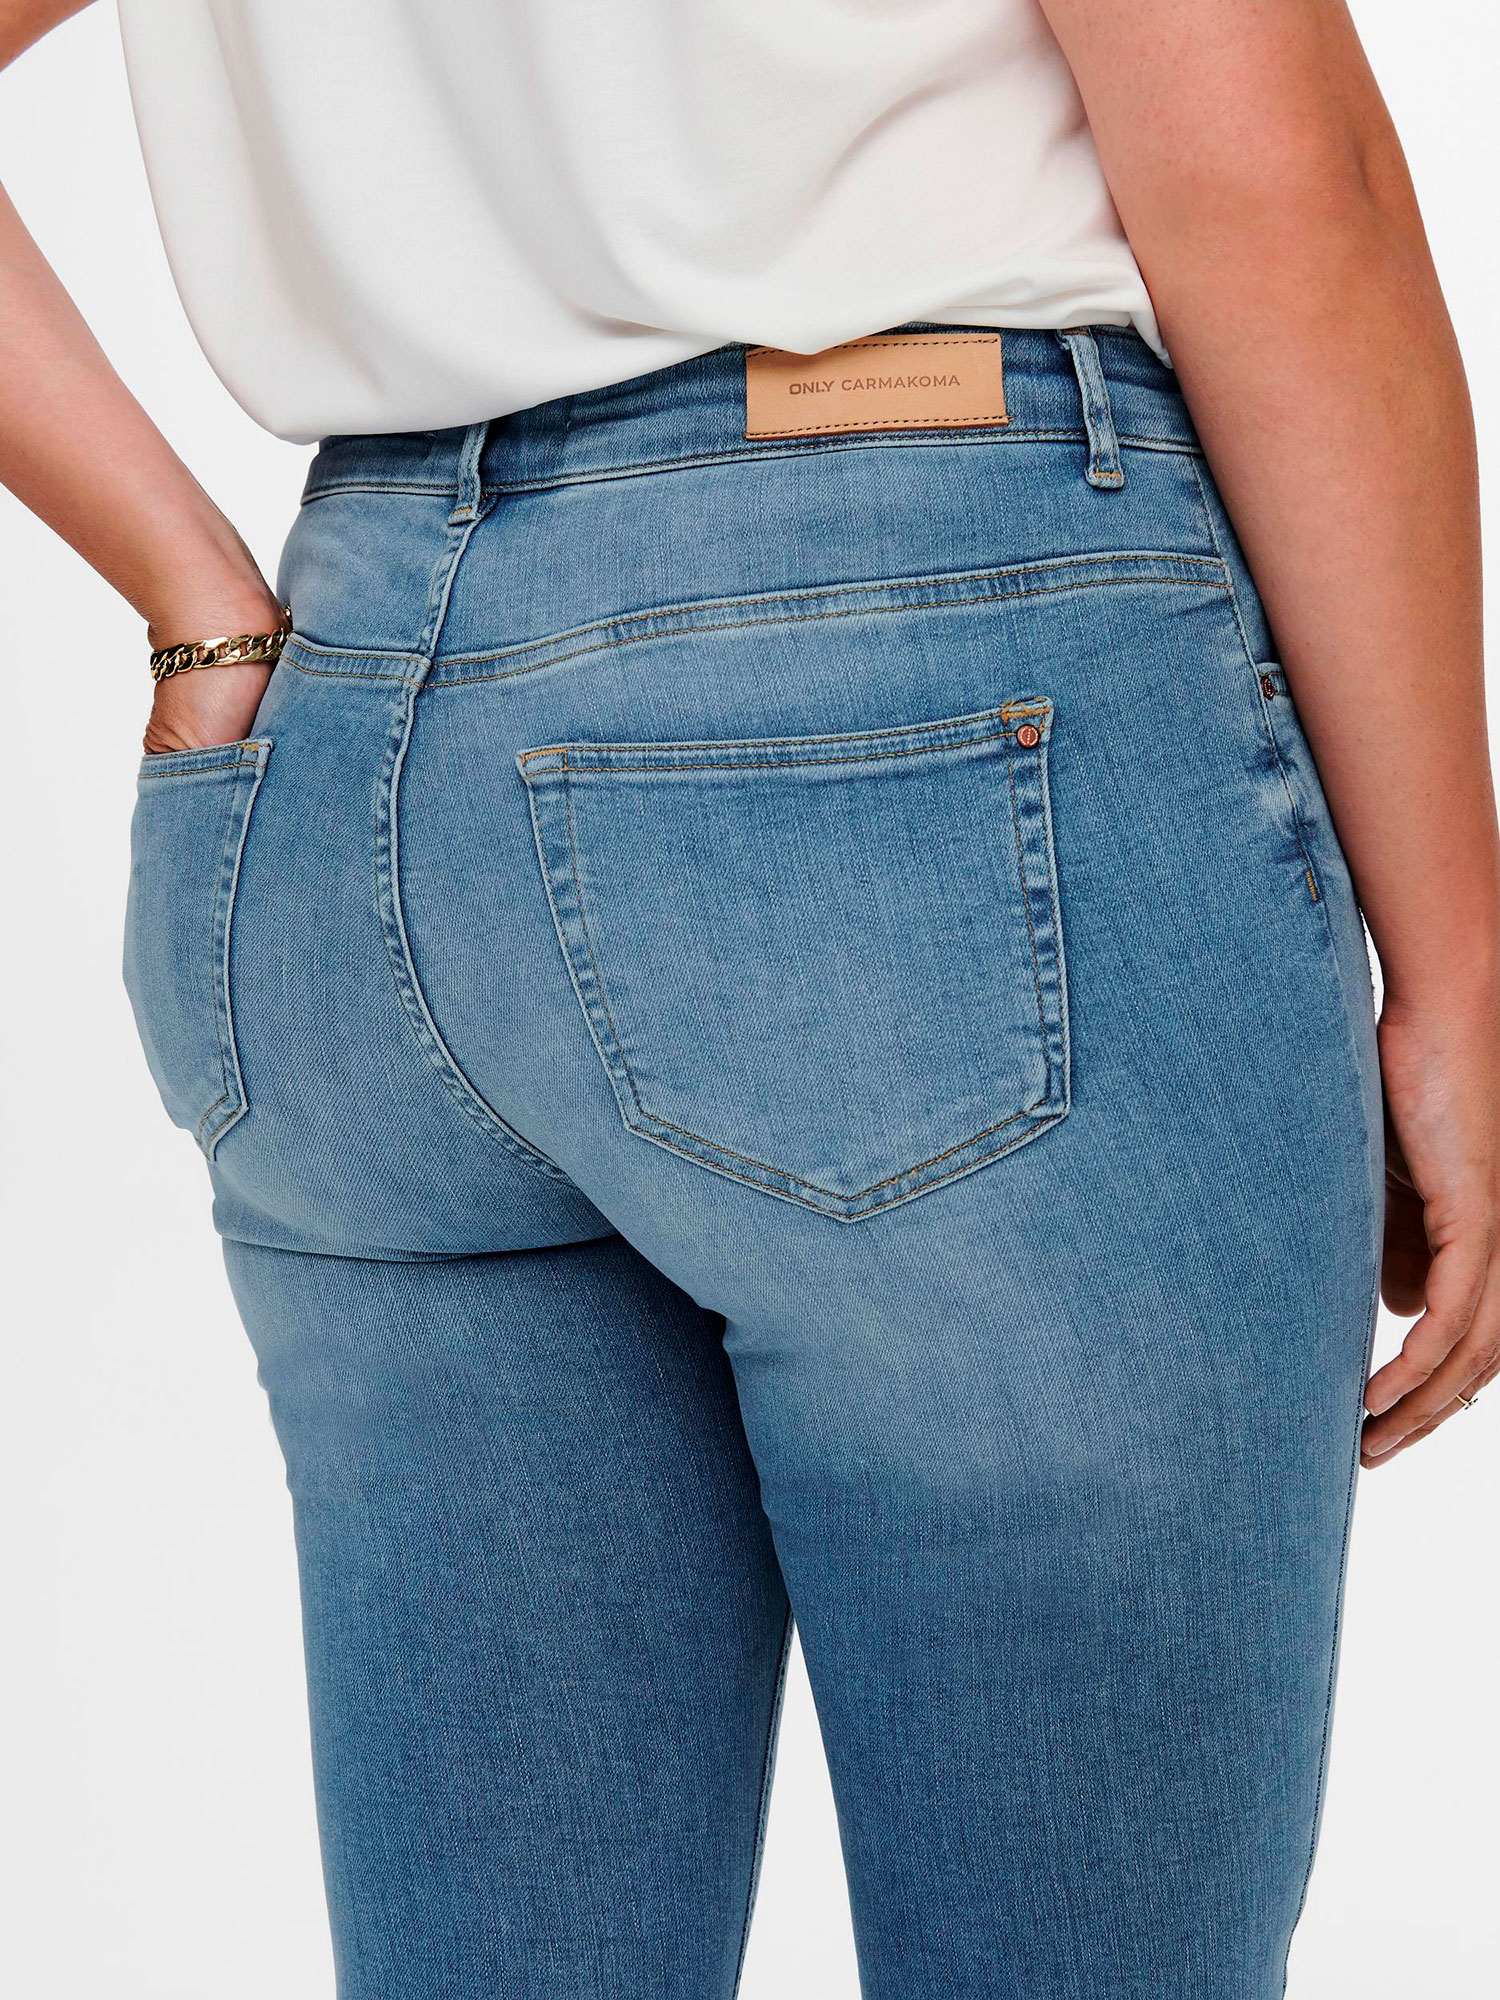 WILLY - Lyseblå 7/8 jeans med frynser fra Only Carmakoma